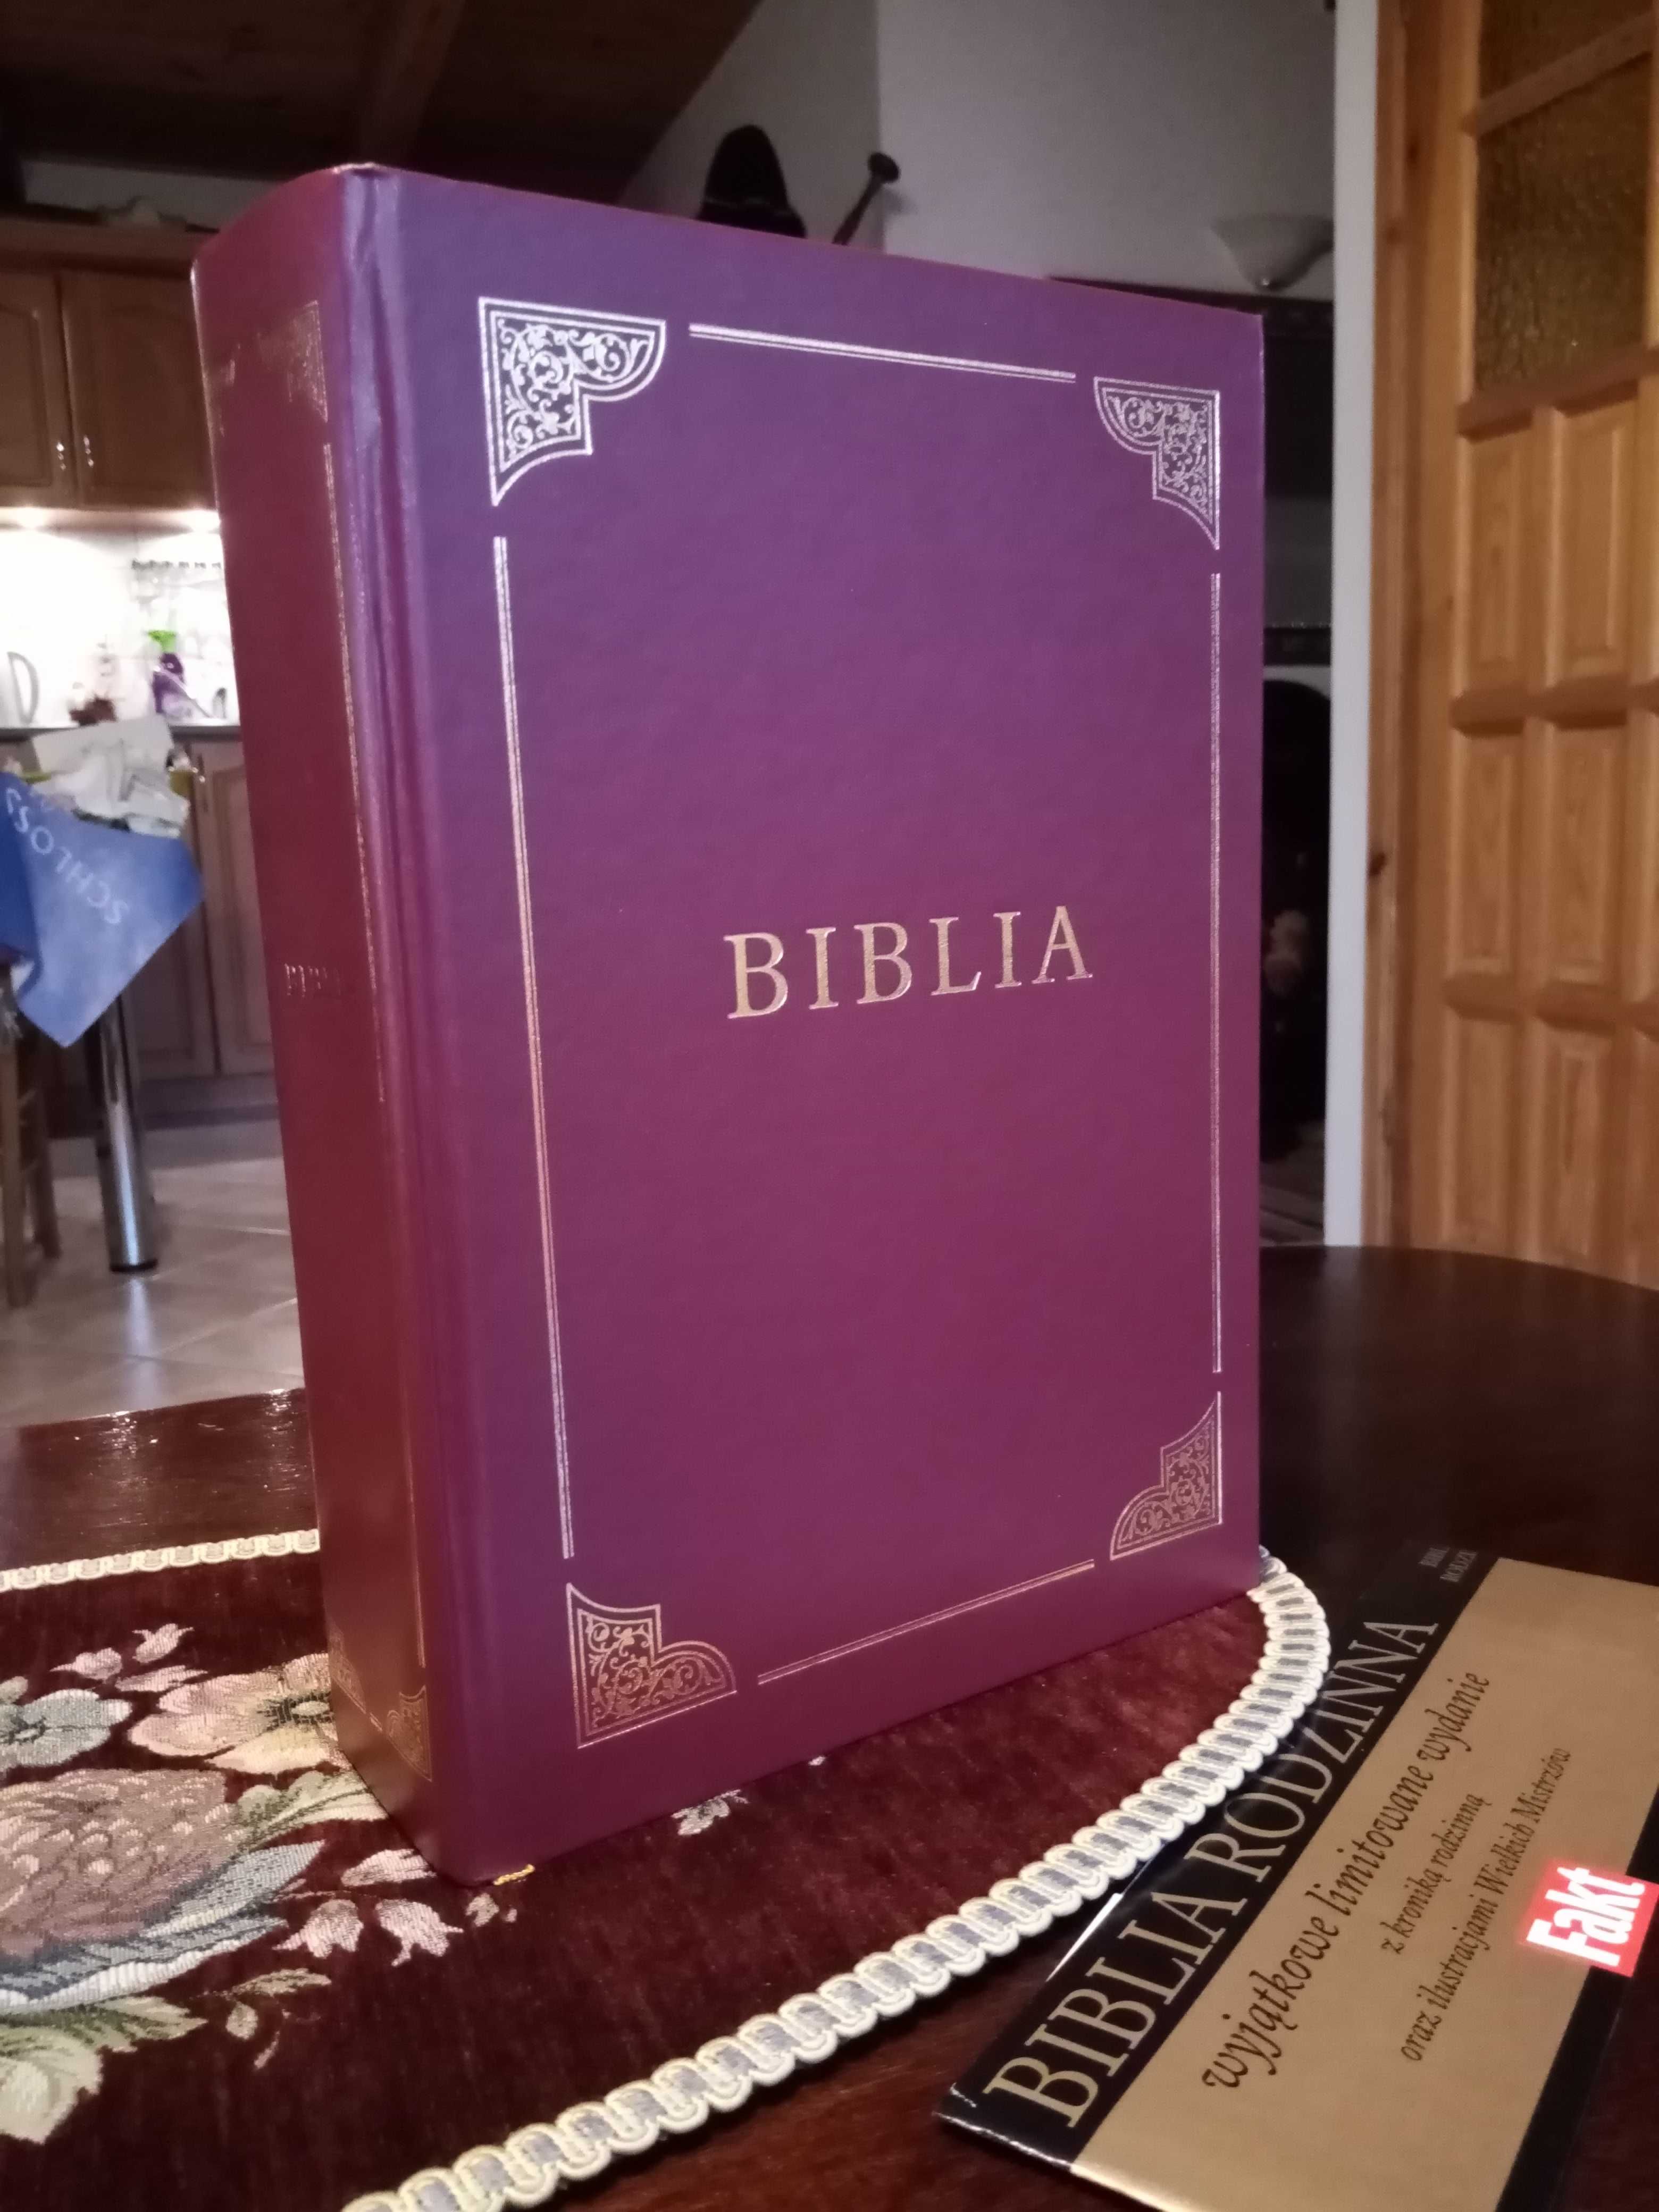 Biblia z kroniką rodzinną